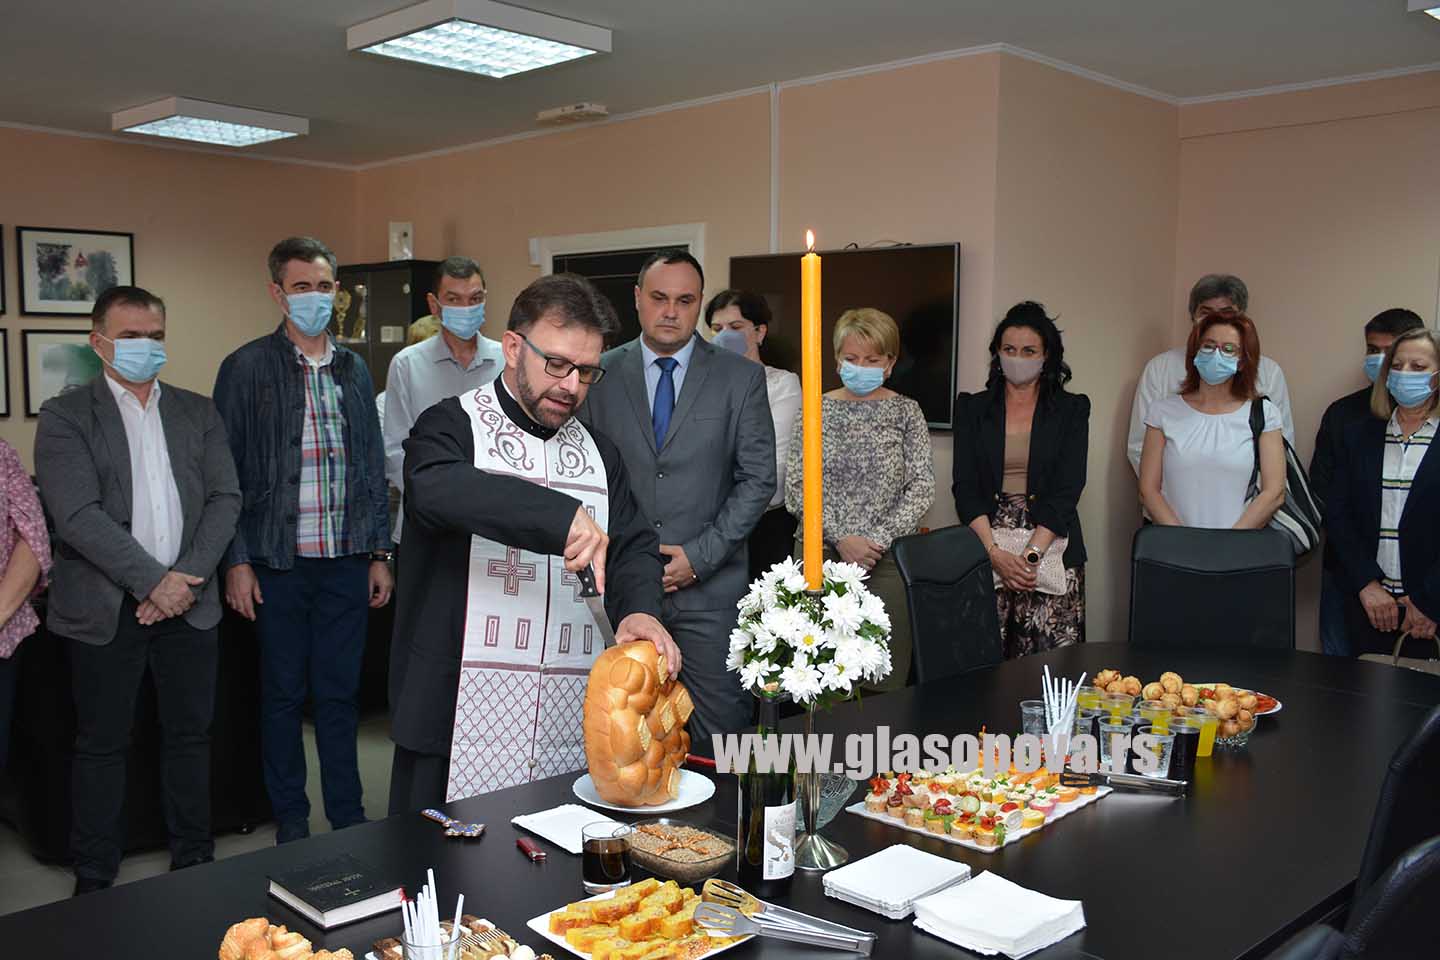 Dan opštine Opovo: U kabinetu predsednika opštine rezan slavski kolač (video)